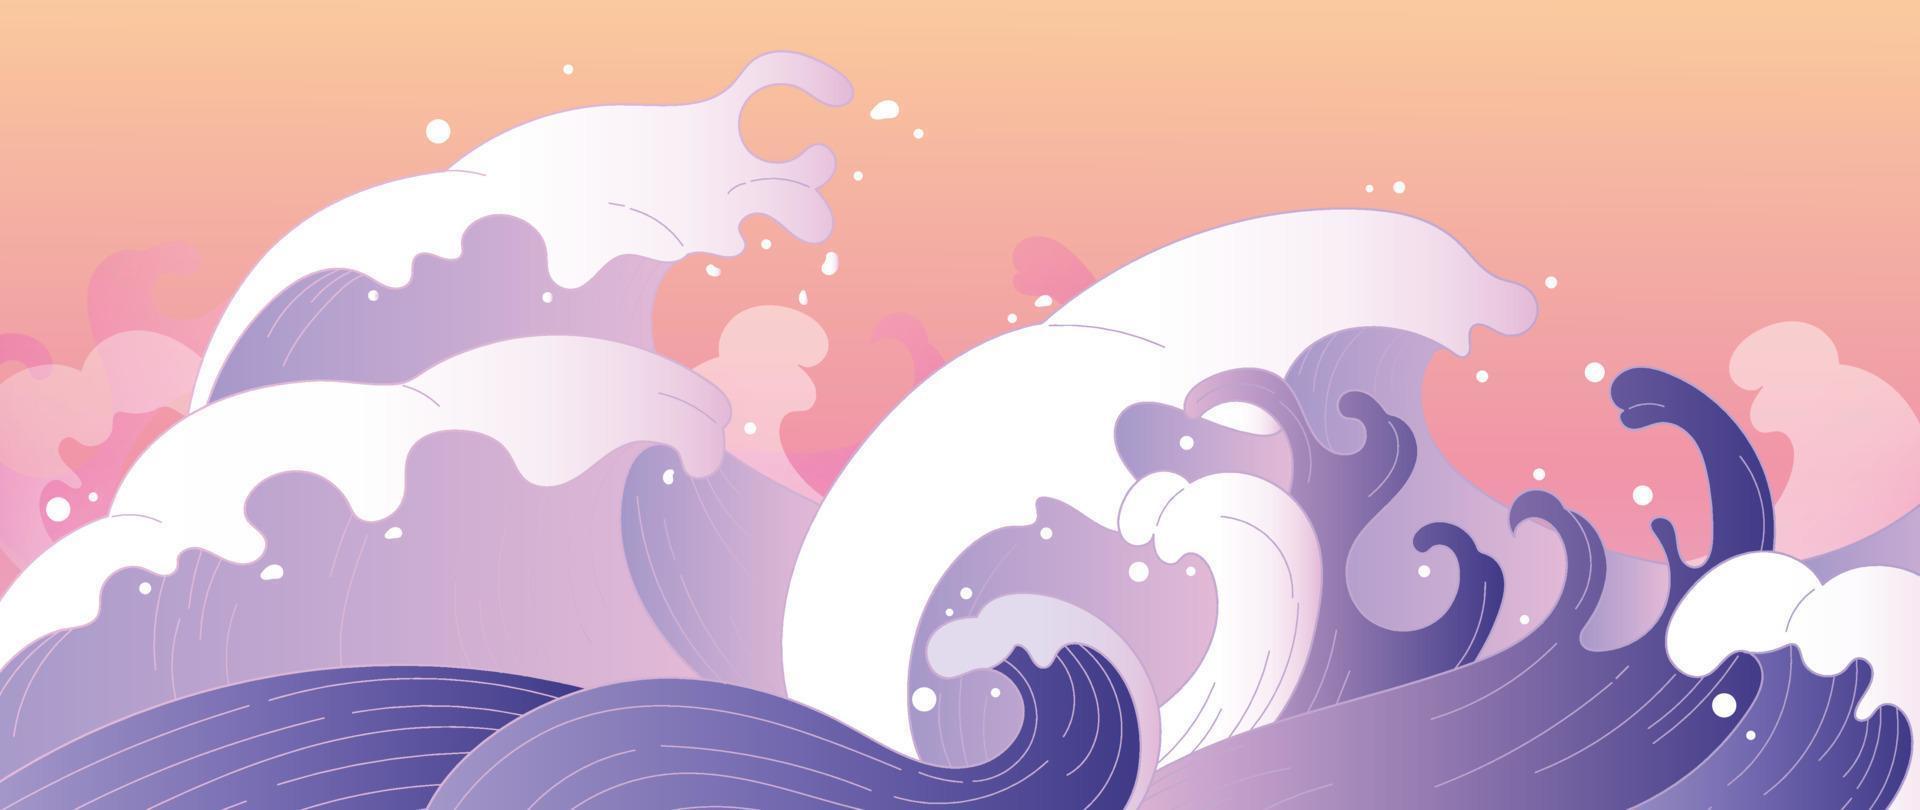 traditioneller japanischer wellenmustervektor. elegante handgezeichnete orientalische ozeanwelle abstrakter musterstilhintergrund. Kunstdesignillustration für Druck, Comic, Poster, Heimtextilien und Tapeten. vektor